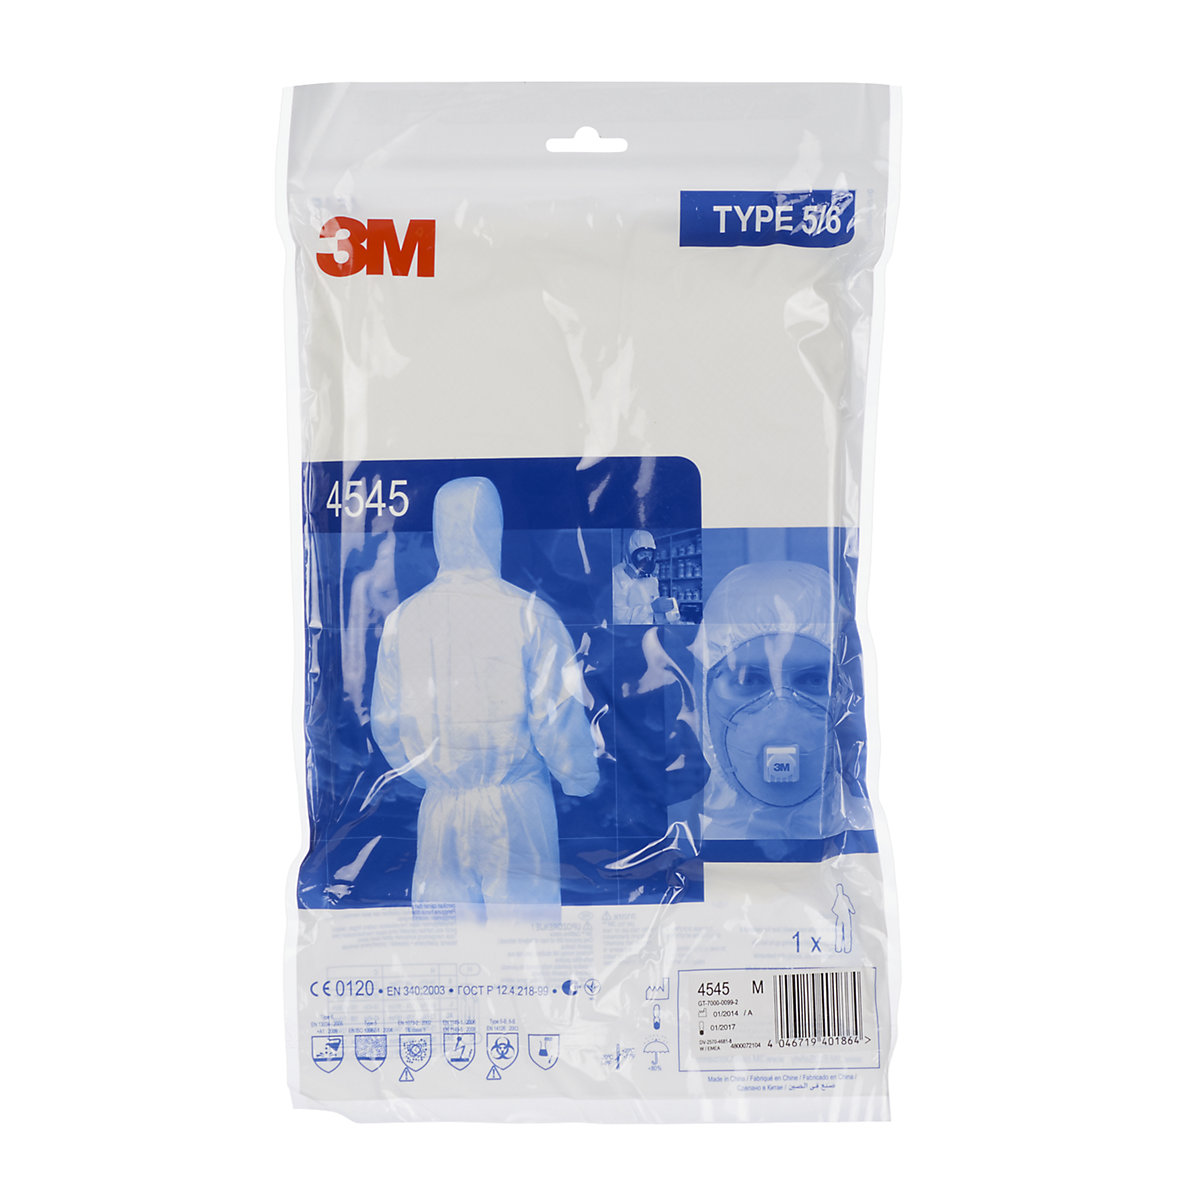 Zaščitno oblačilo za enkratno uporabo 4545 (tipa 5/6) – 3M (Slika izdelka 6)-5